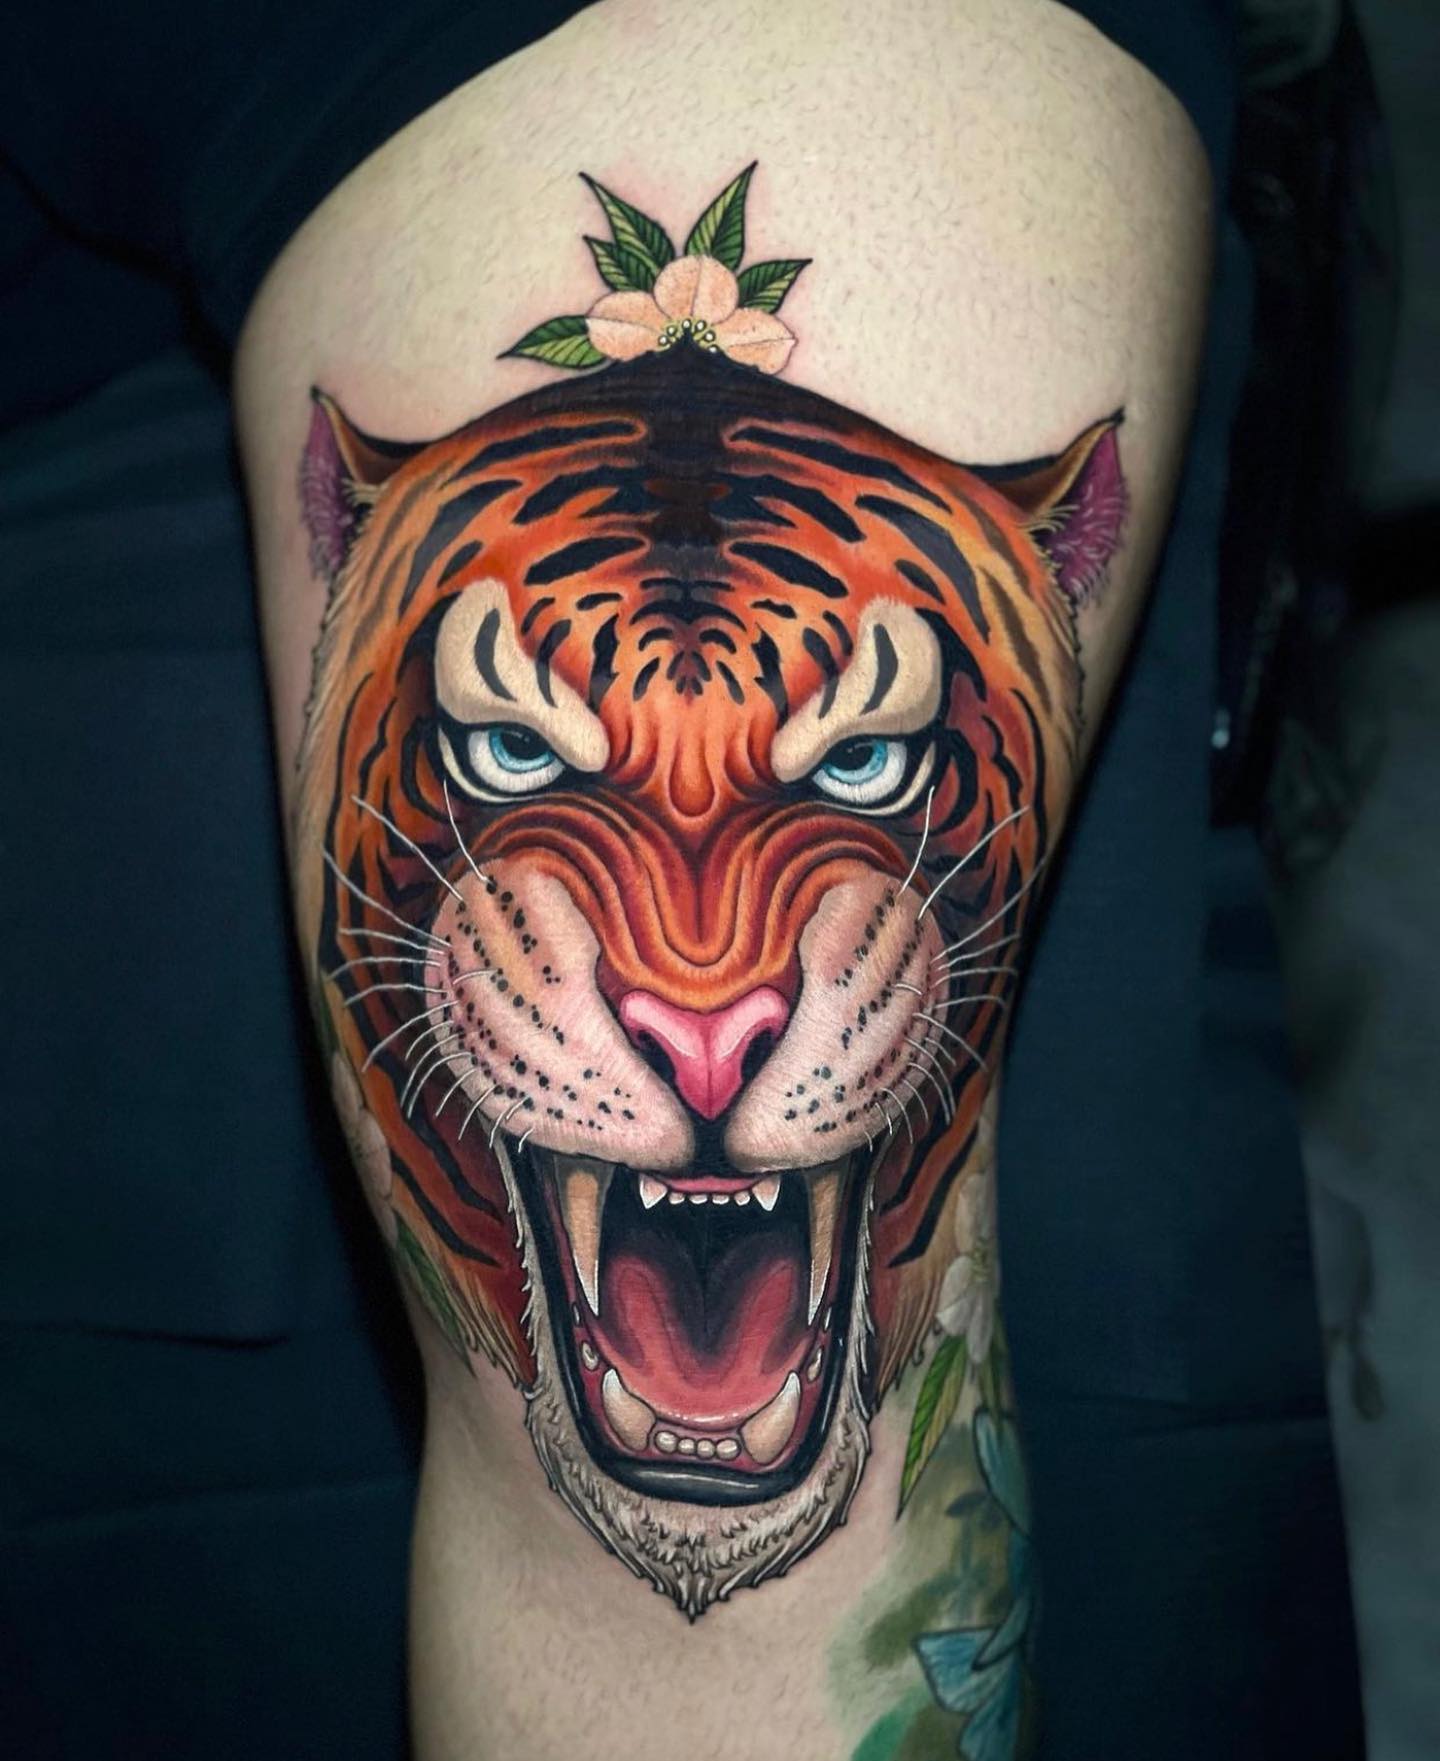 Powerful Tiger Tattoo in Big Size | Tattoo Ink Master